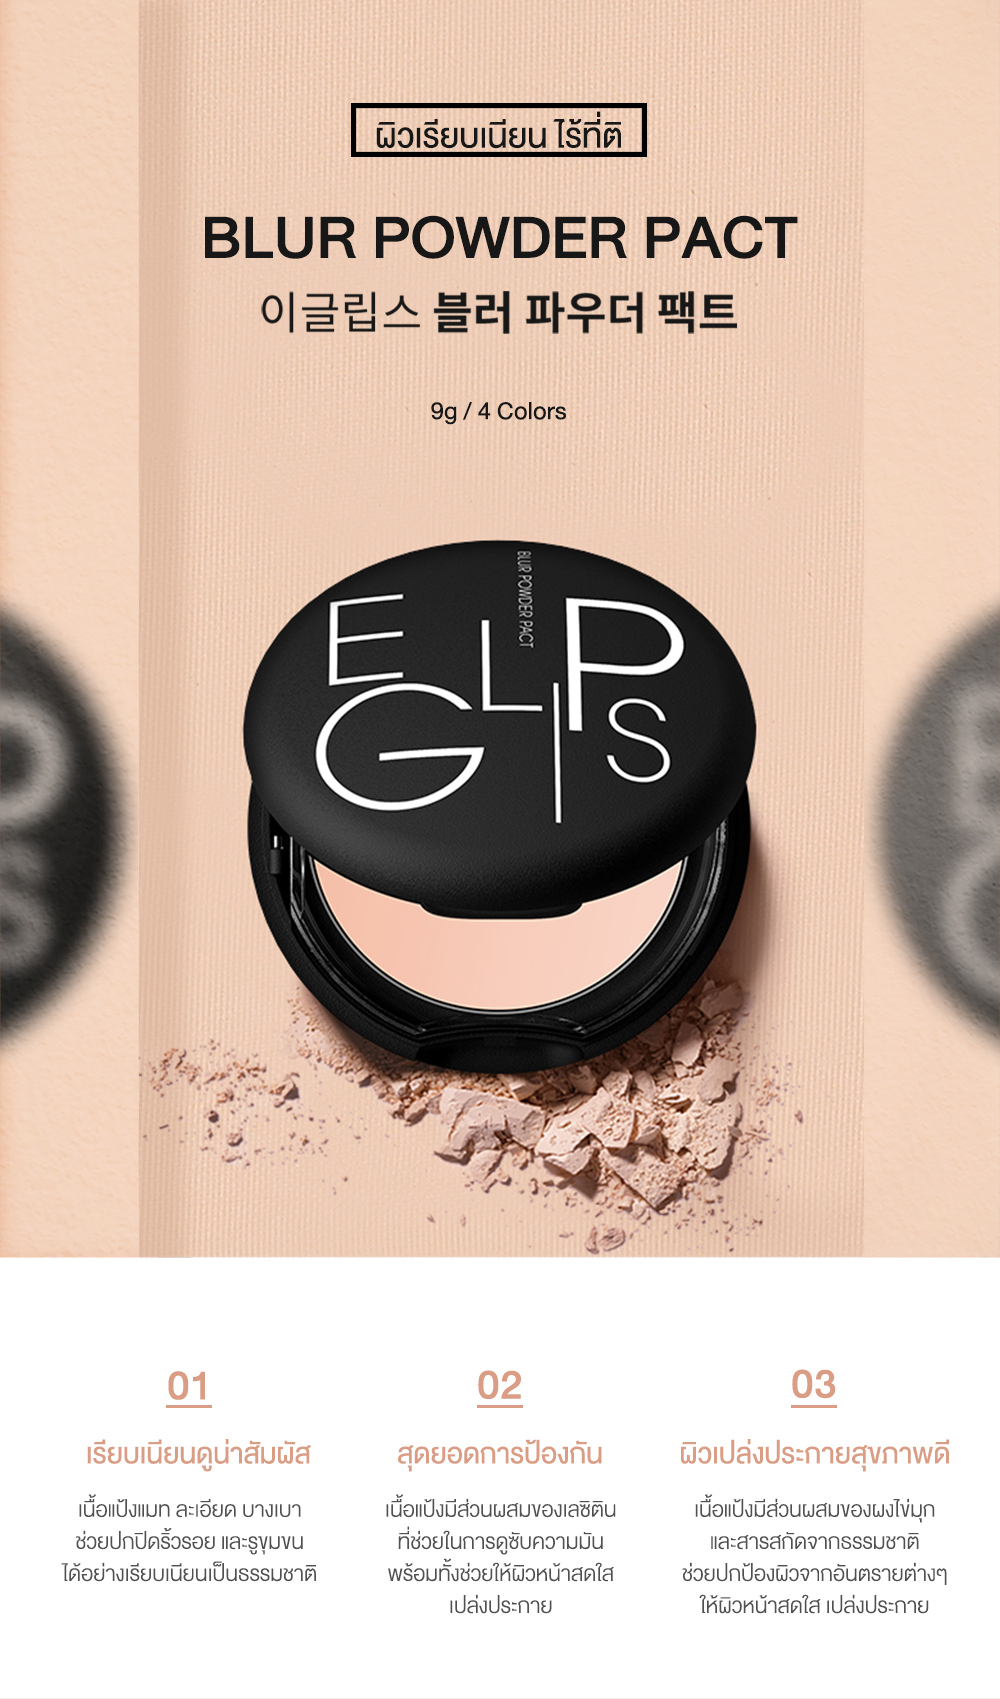 ข้อมูลเพิ่มเติมของ Eglips Blur Powder Pact & Eglips Super Slim Auto Long Eyeliner อีกลิปส์ (แป้งดำ, เบลอรูขุมขน, อายไลเนอร์, กันน้ำ)